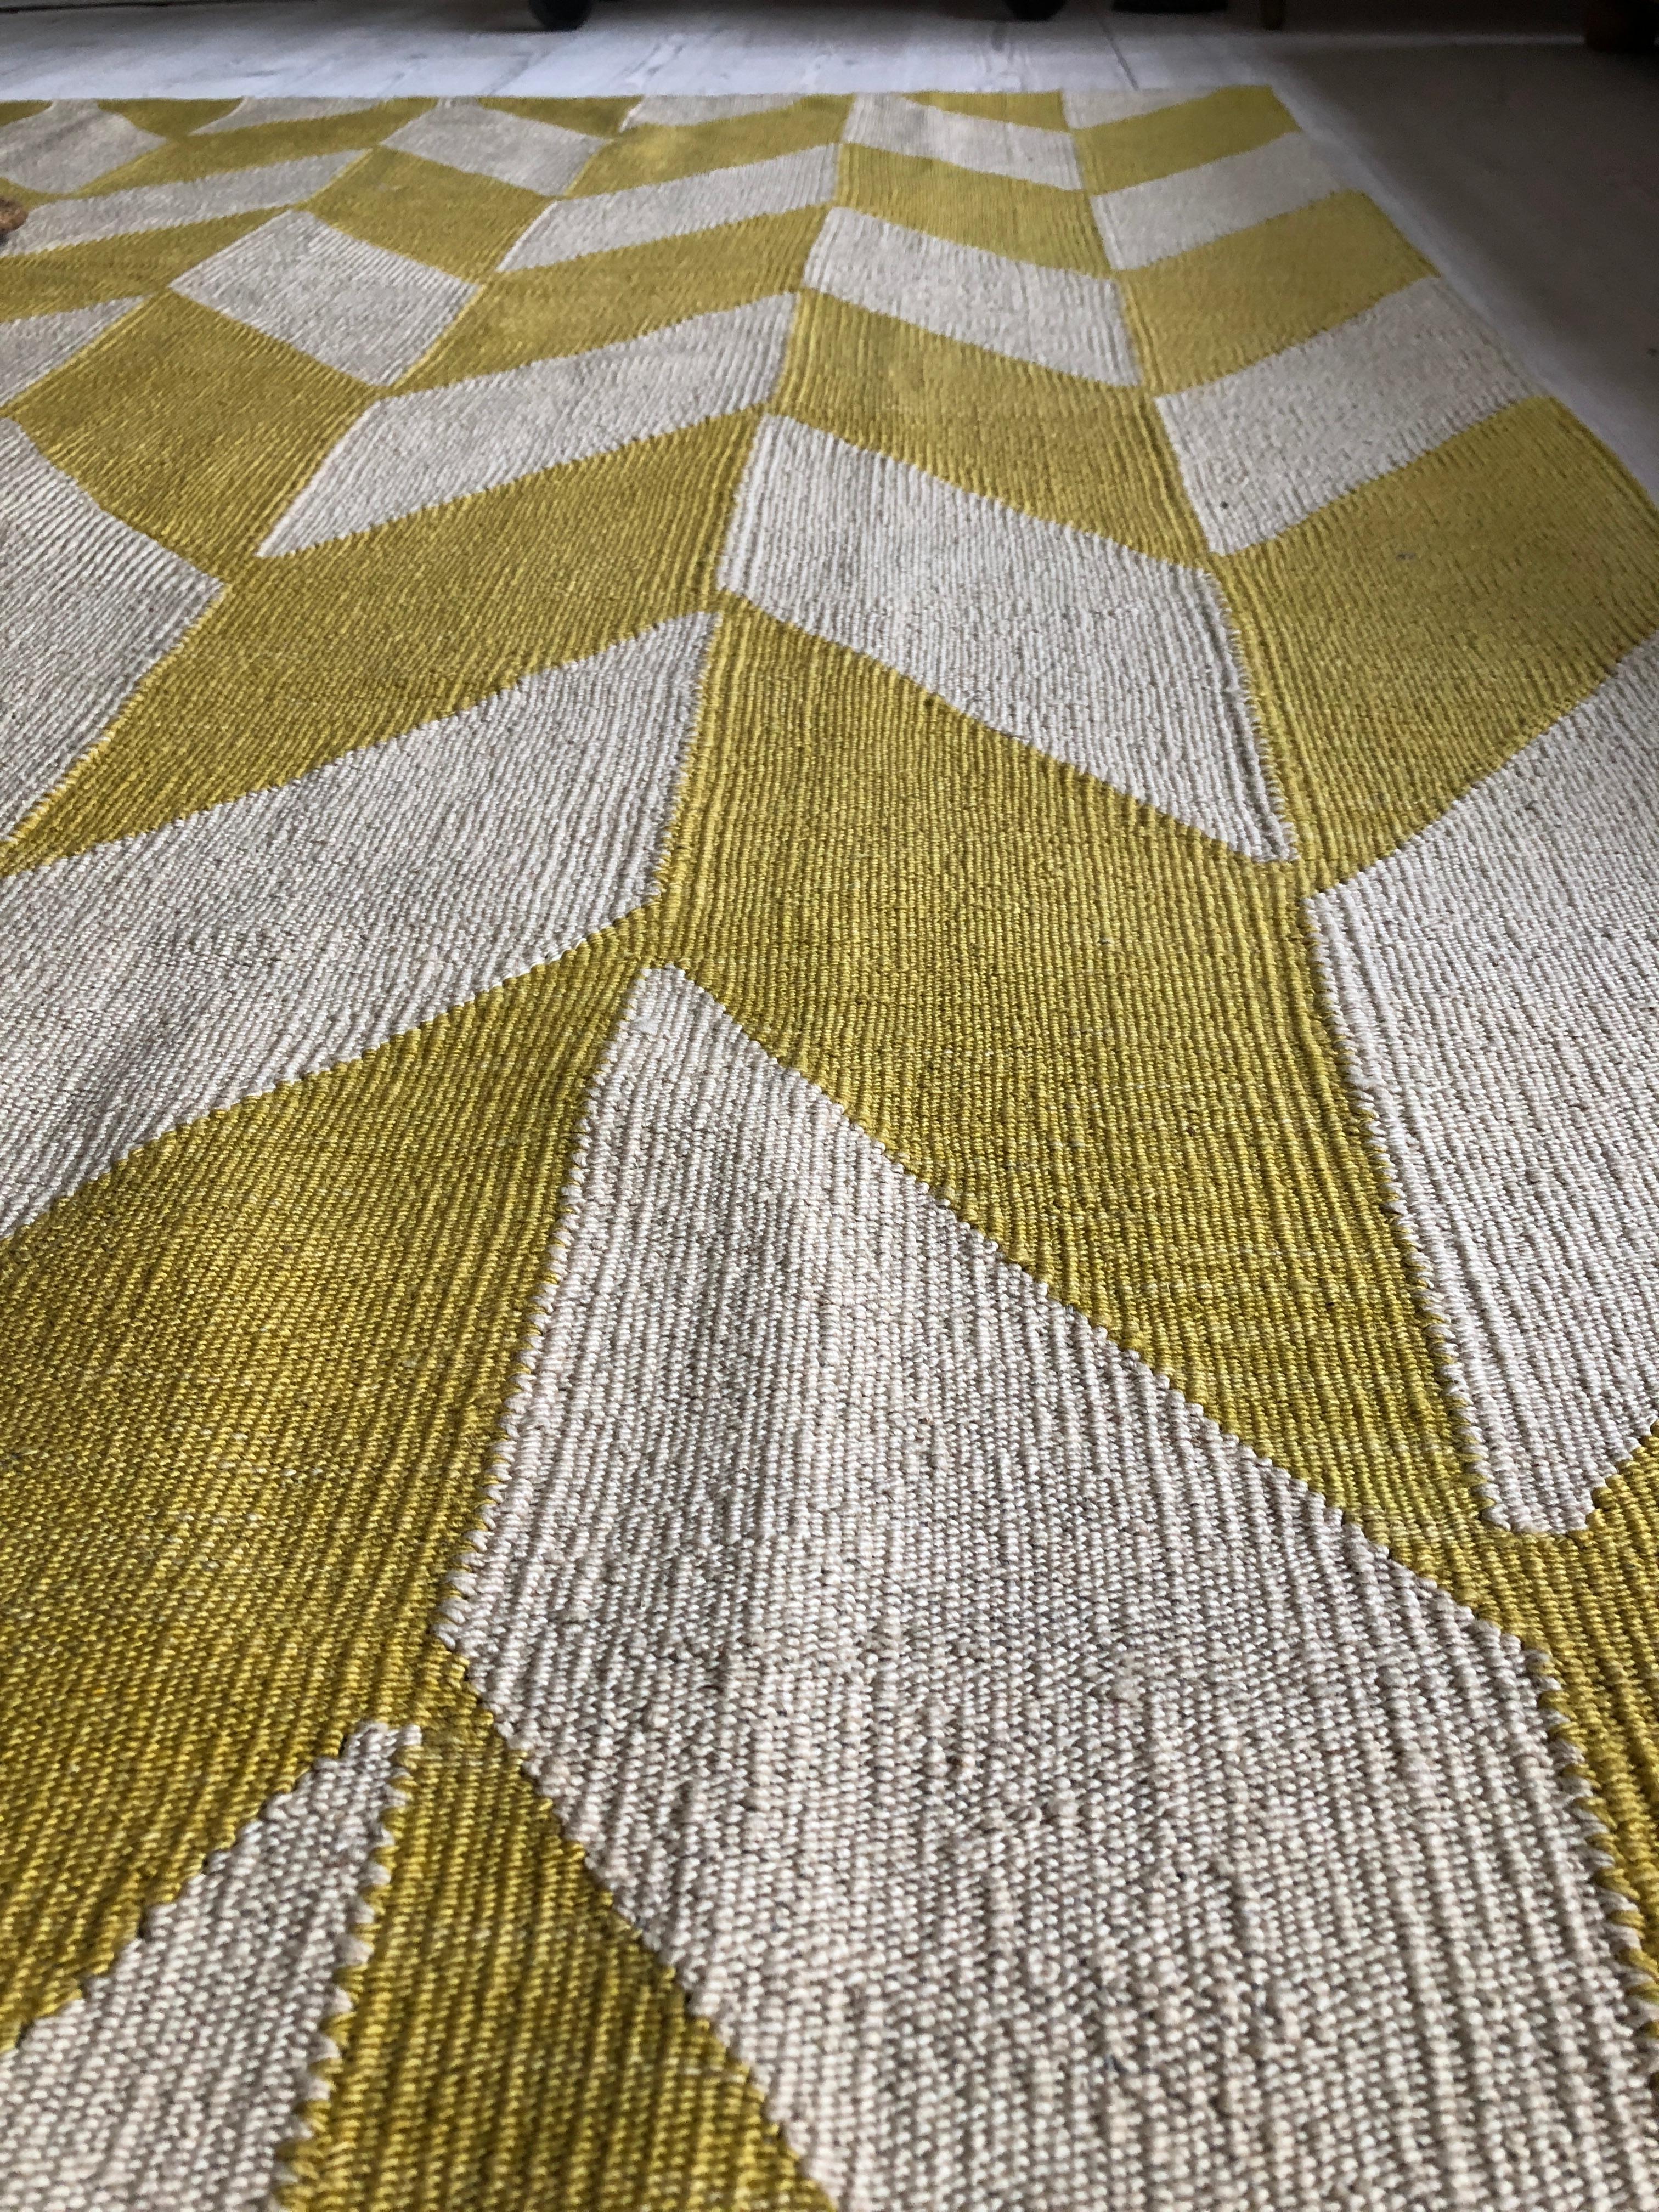 Wool Contemporary Kelim Rug with Yellow and Cream Herringbone Pattern, Turkey